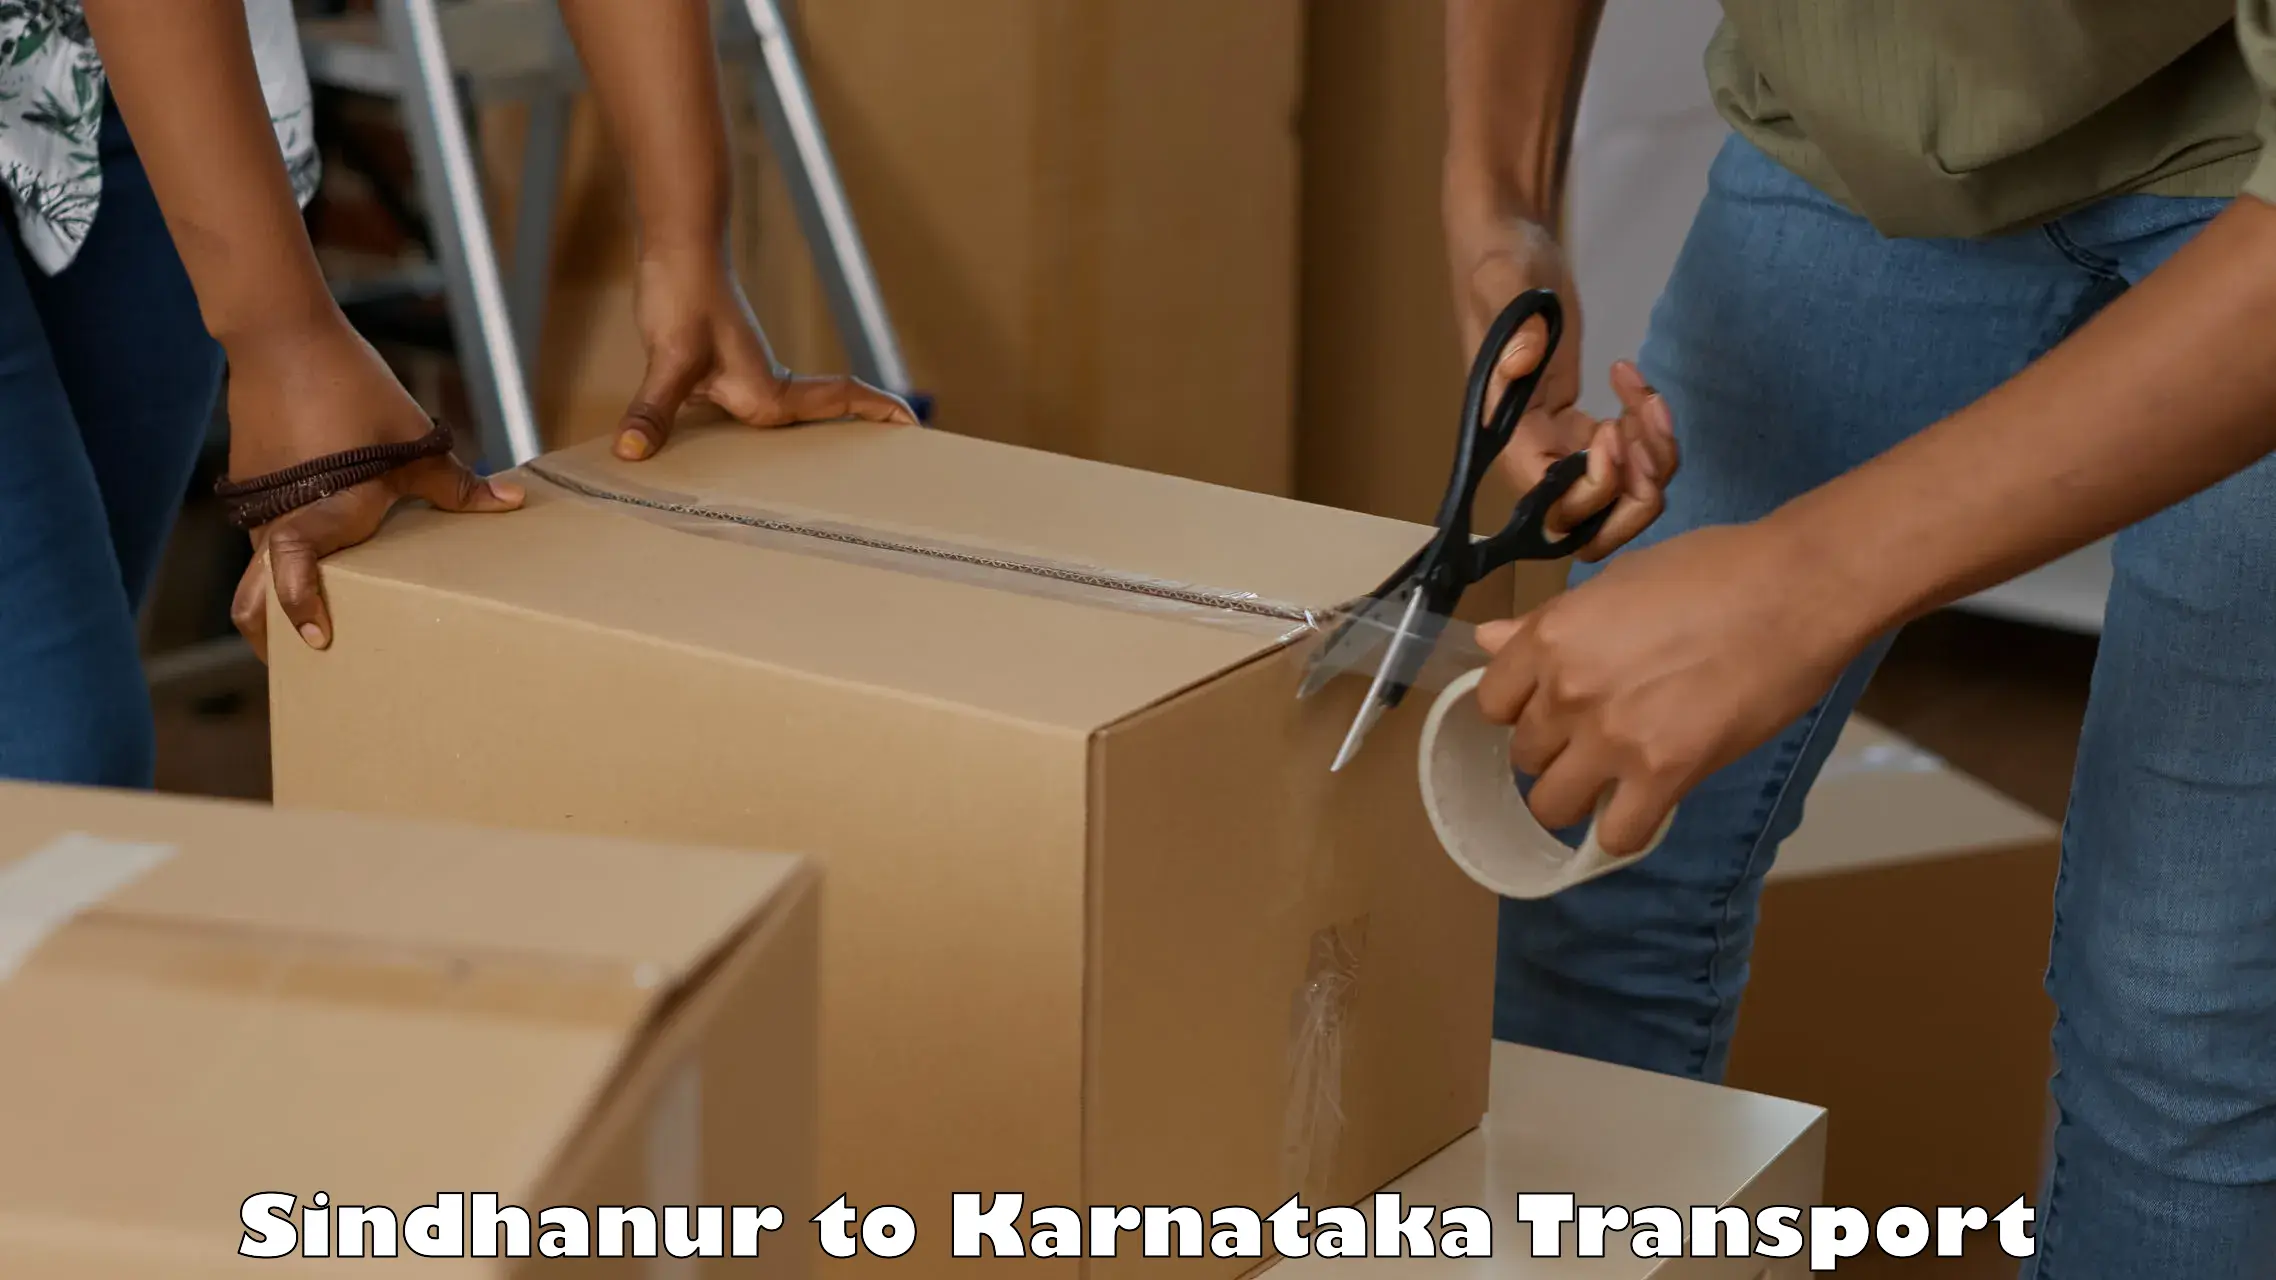 Container transport service Sindhanur to NIT Srinivasanagar